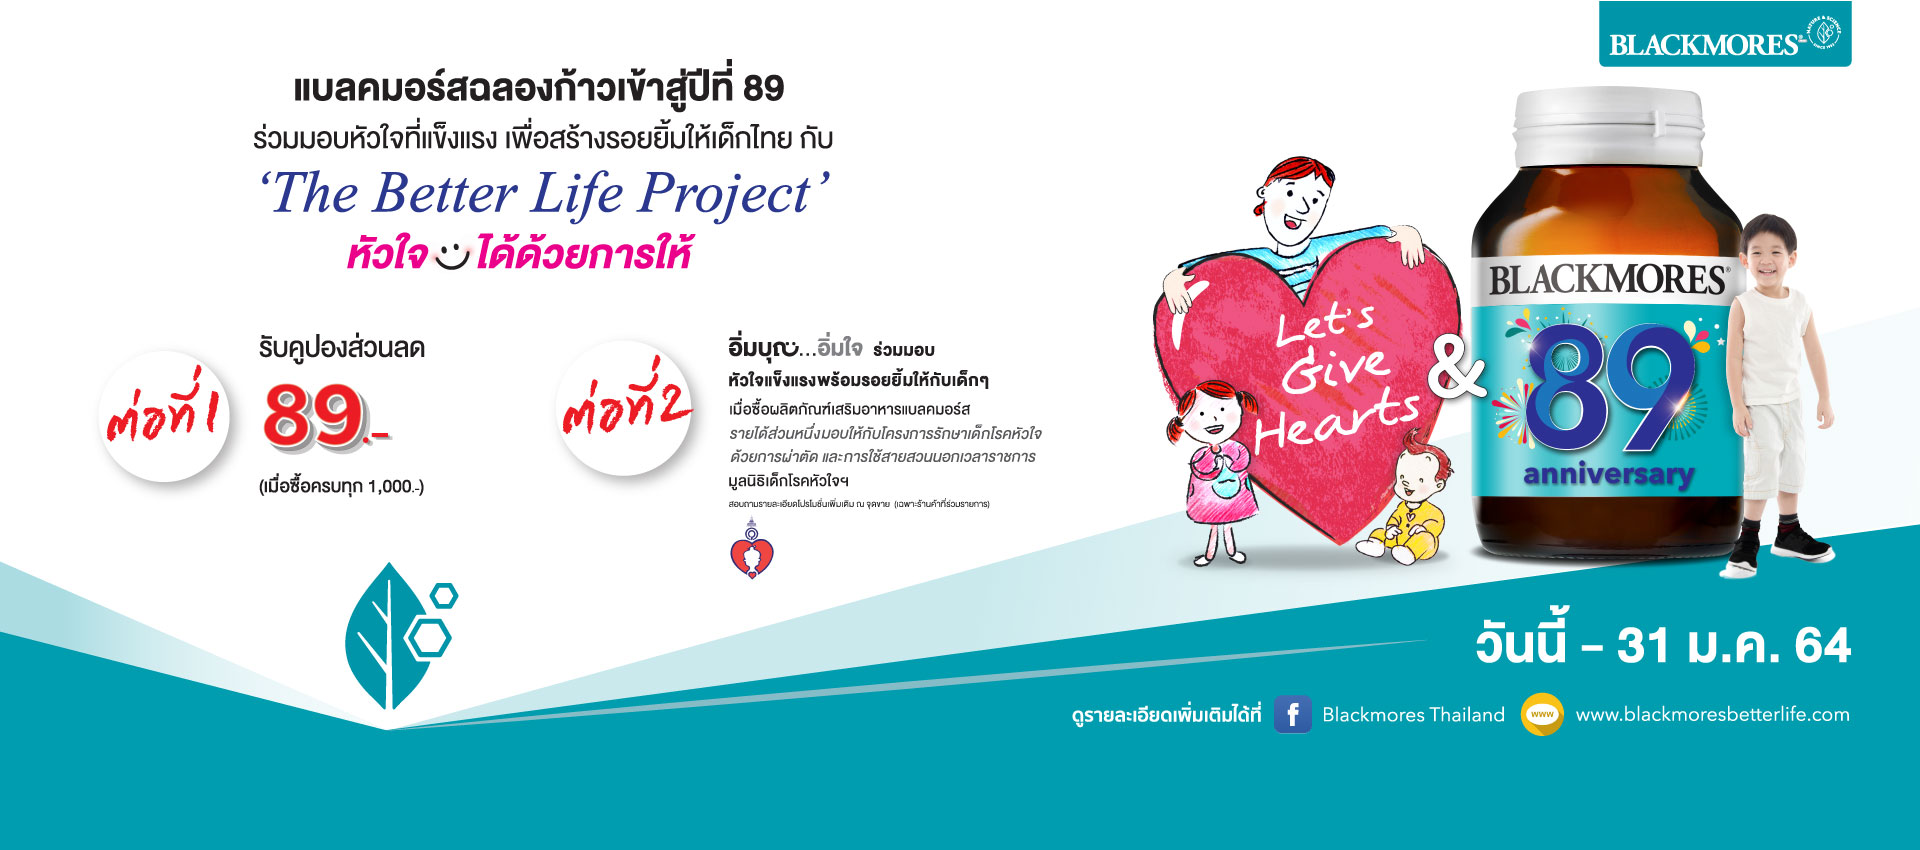 Blackmores The Better Life Project หัวใจยิ้มได้ด้วยการให้ มอบรายได้ส่วนหนึ่งสนับสนุนมูลนิธิเด็กโรคหัวใจฯ